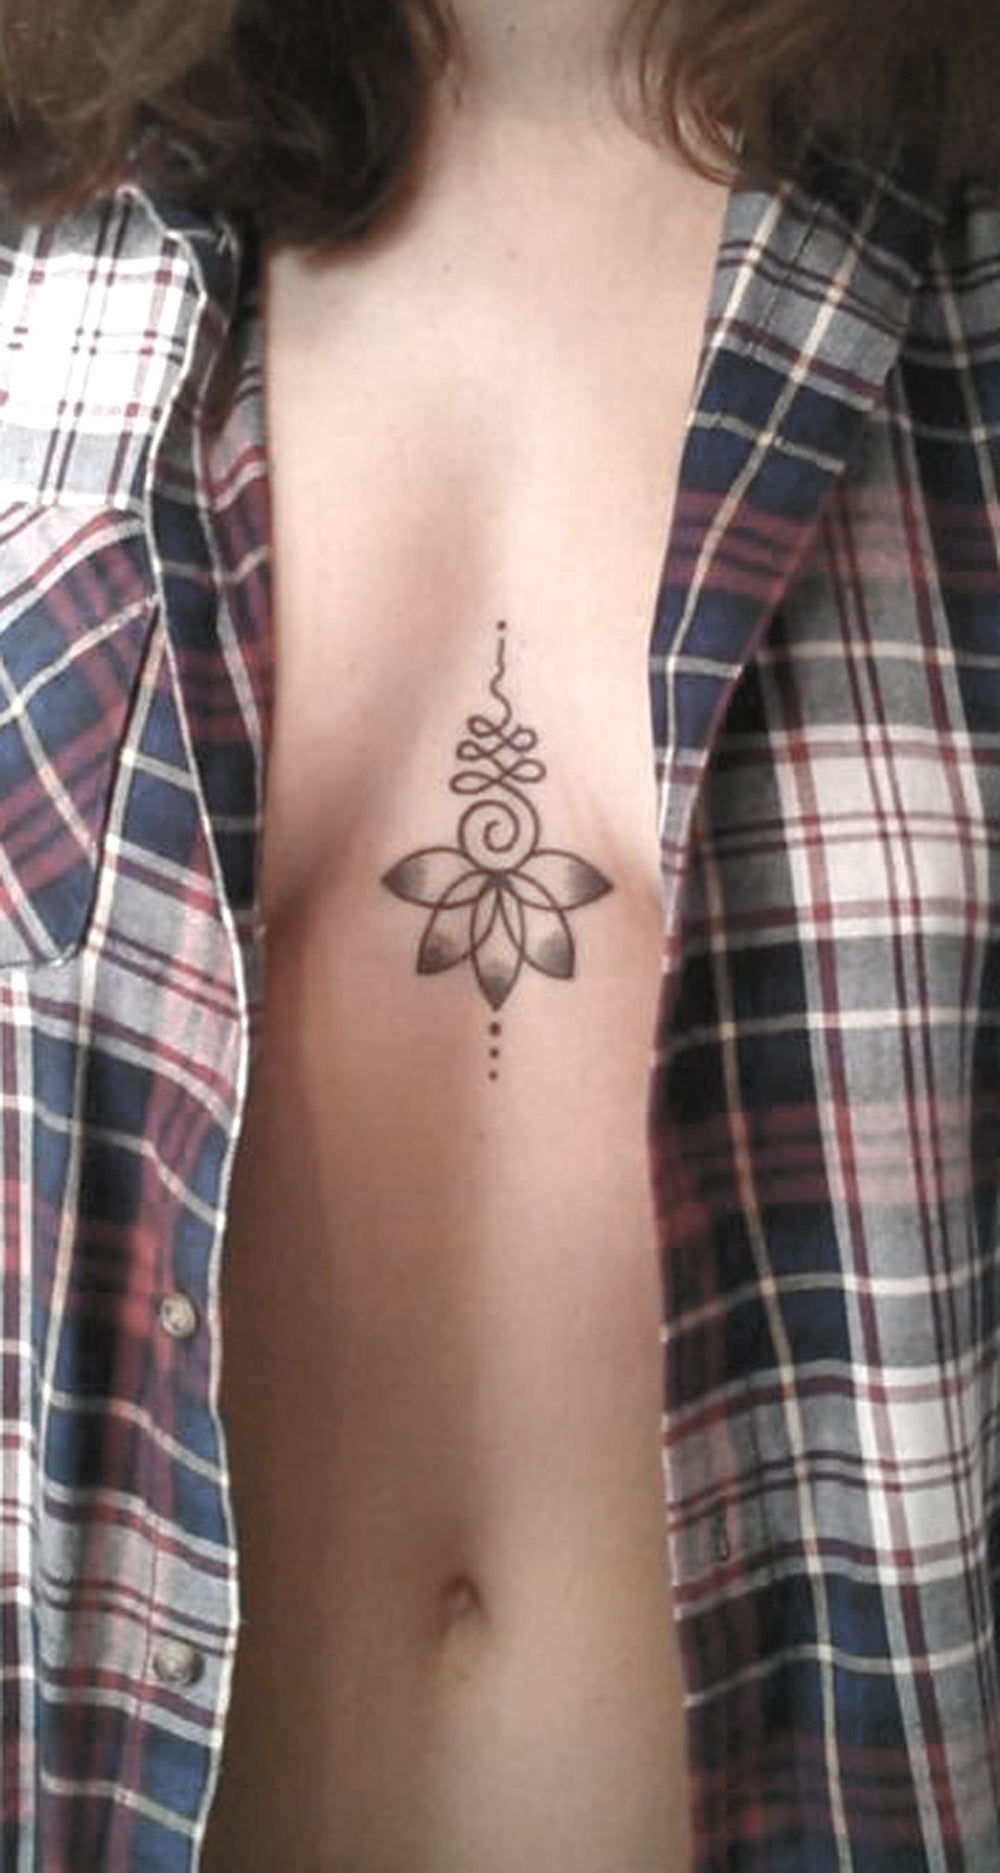 Tribal Unalome Sternum Tattoo Ideas for Women - Bohemian Floral Flower Chest Tatt -  Idées de tatouage de poitrine de lotus pour des femmes - www.MyBodiArt.com